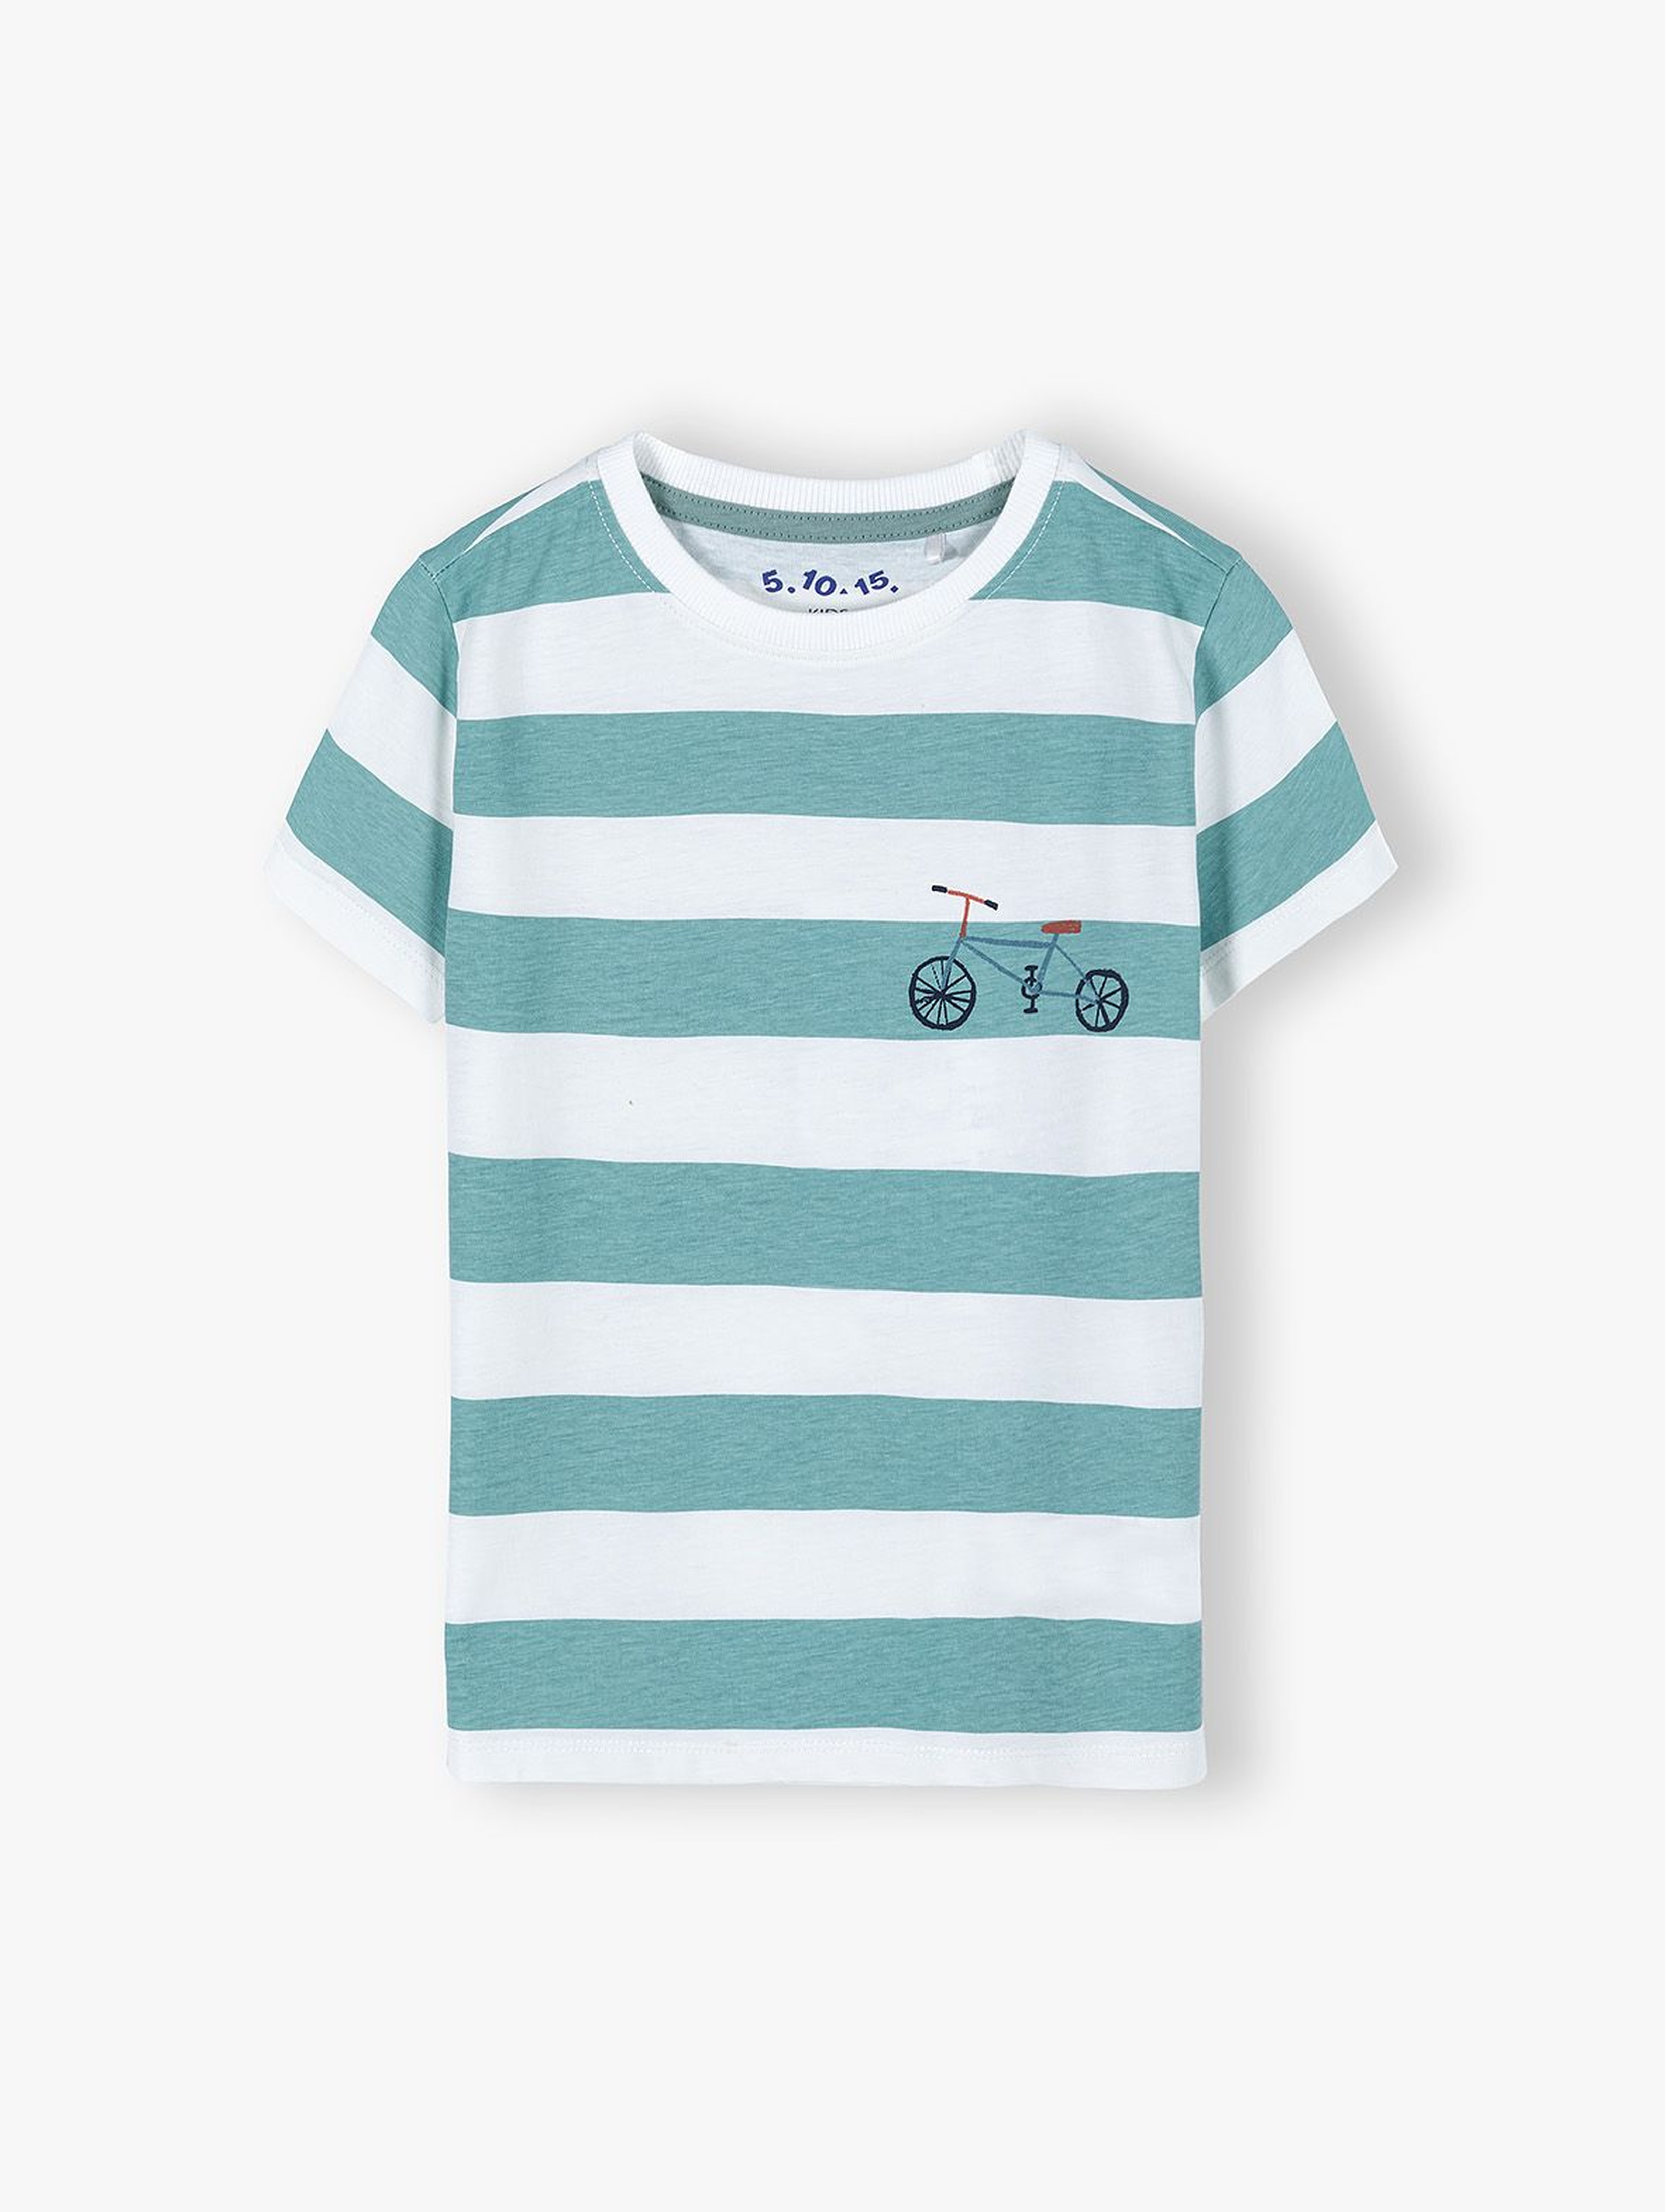 Bawełniany t-shirt chłopięcy w paski z rowerem